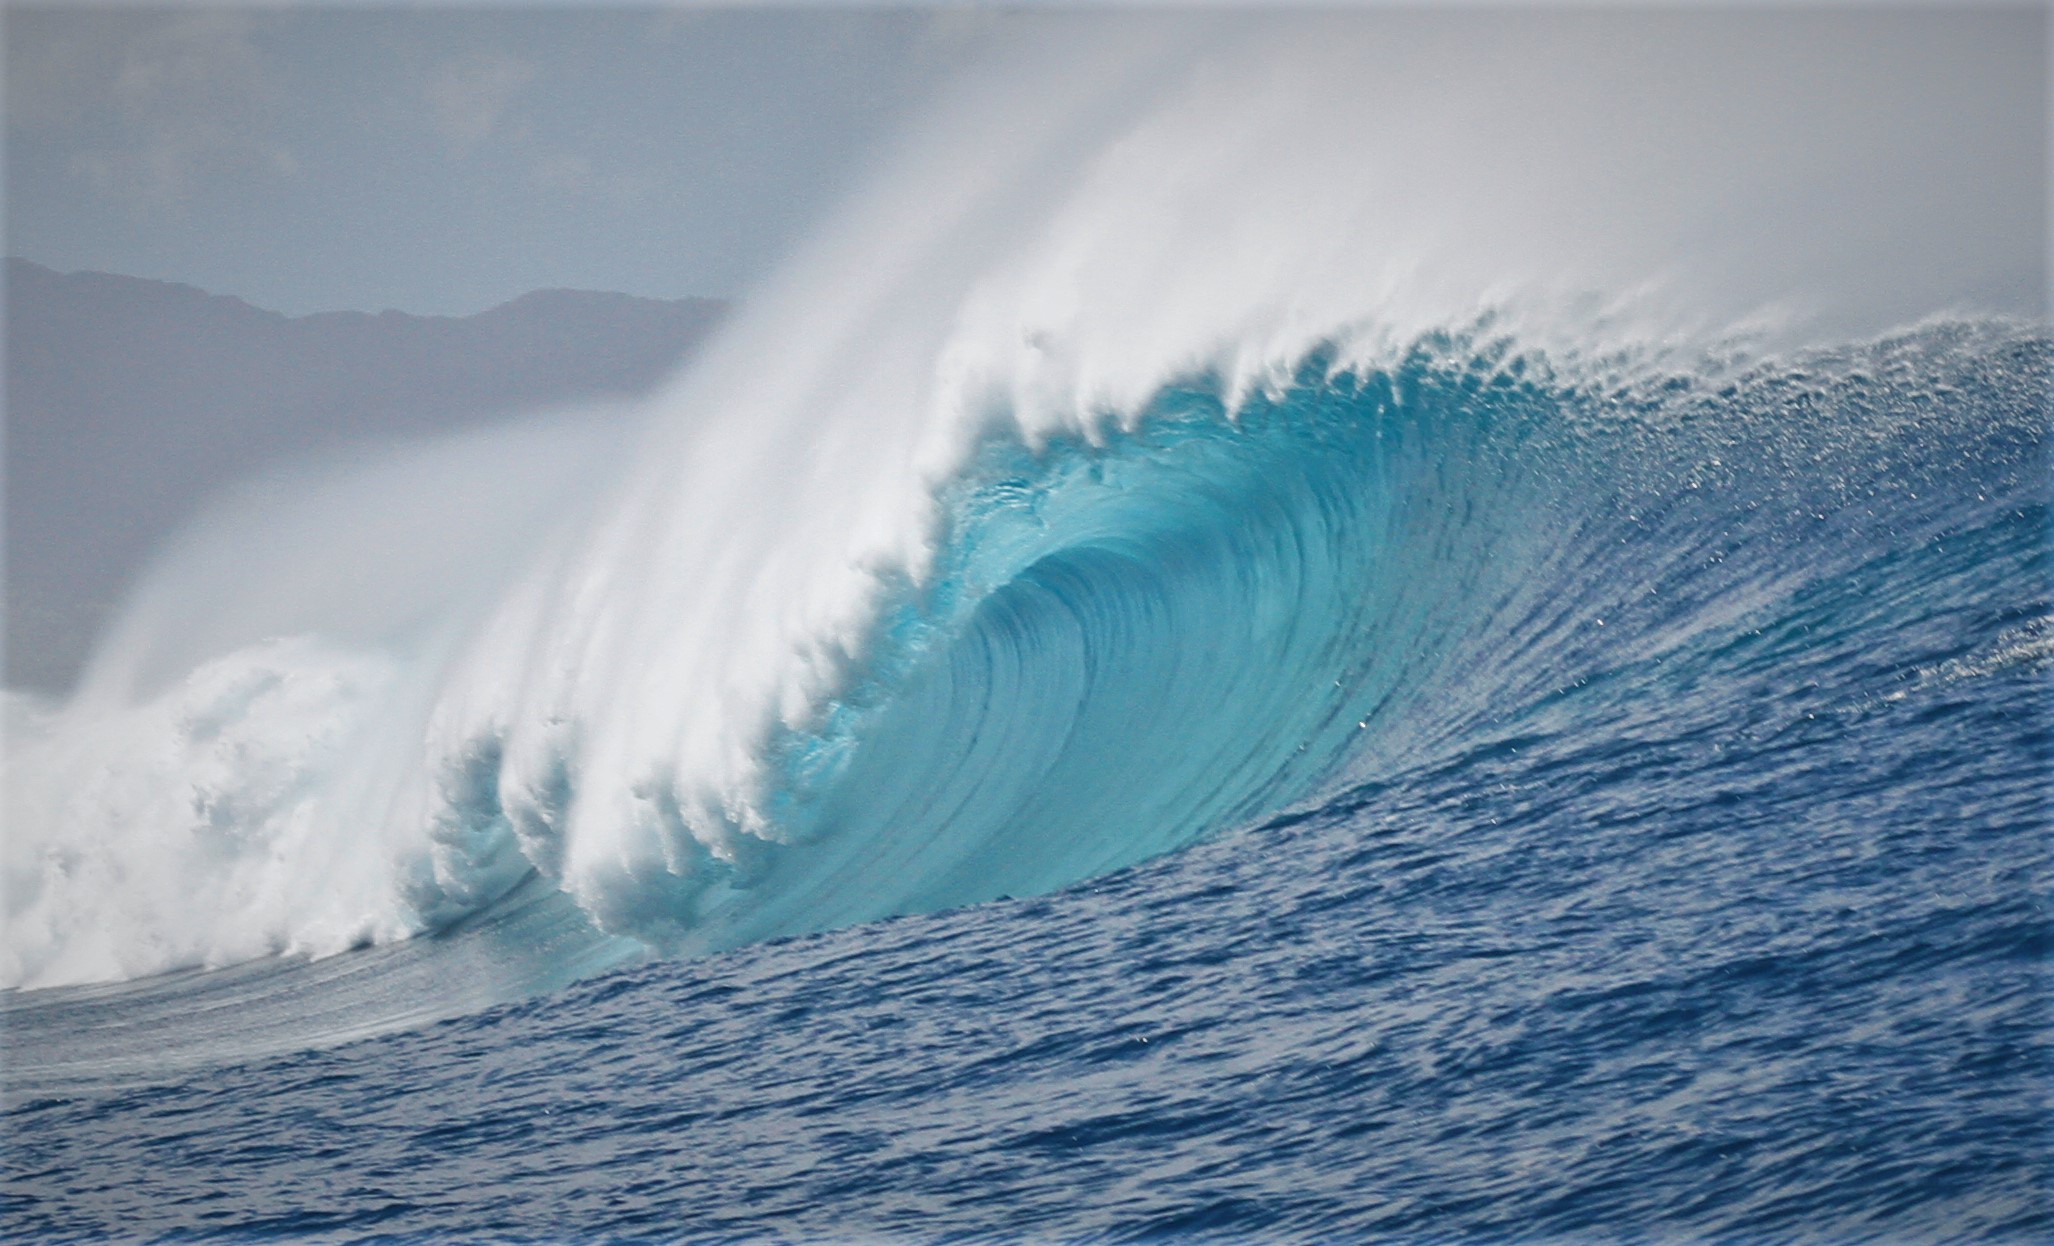 Himalayas grande sai de controle até mesmo para os surfistas mais acostumados às condições extremas do North Shore de Oahu, no Havaí.